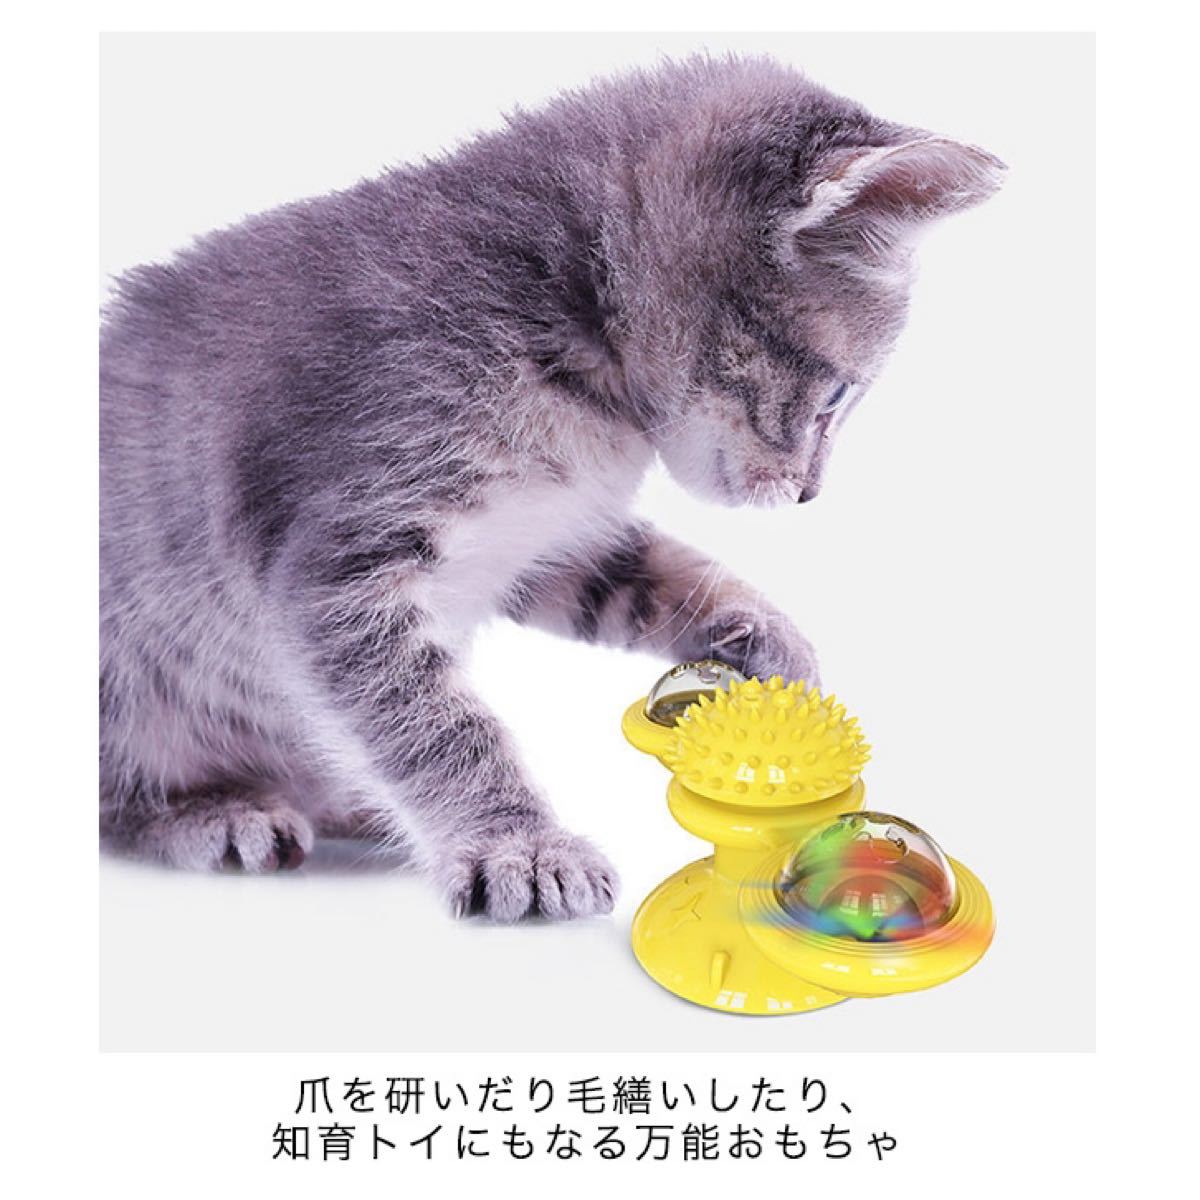 猫おもちゃ ターンテーブル 猫 ペット おもちゃ 歯磨き 噛む 運動不足解消 ストレス解消 玩具 回転